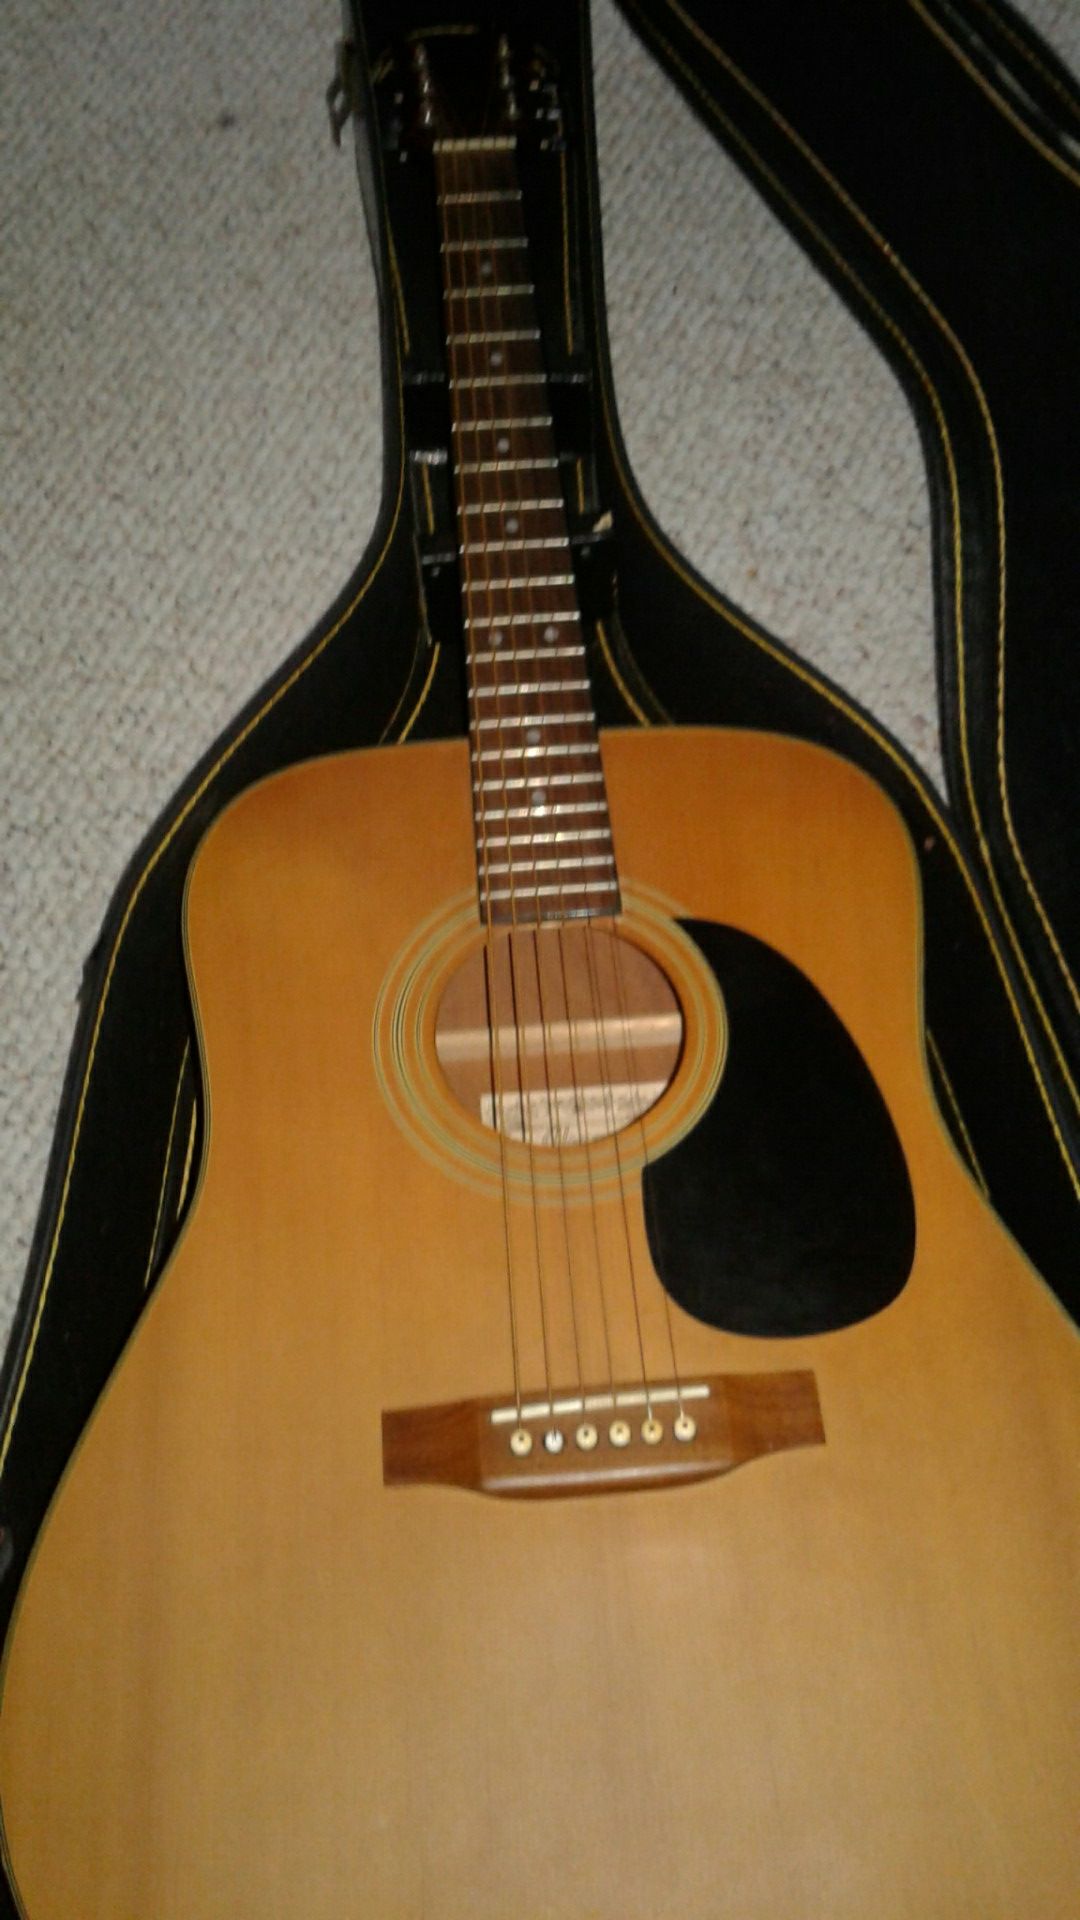 PF5 N Ibanez guitar